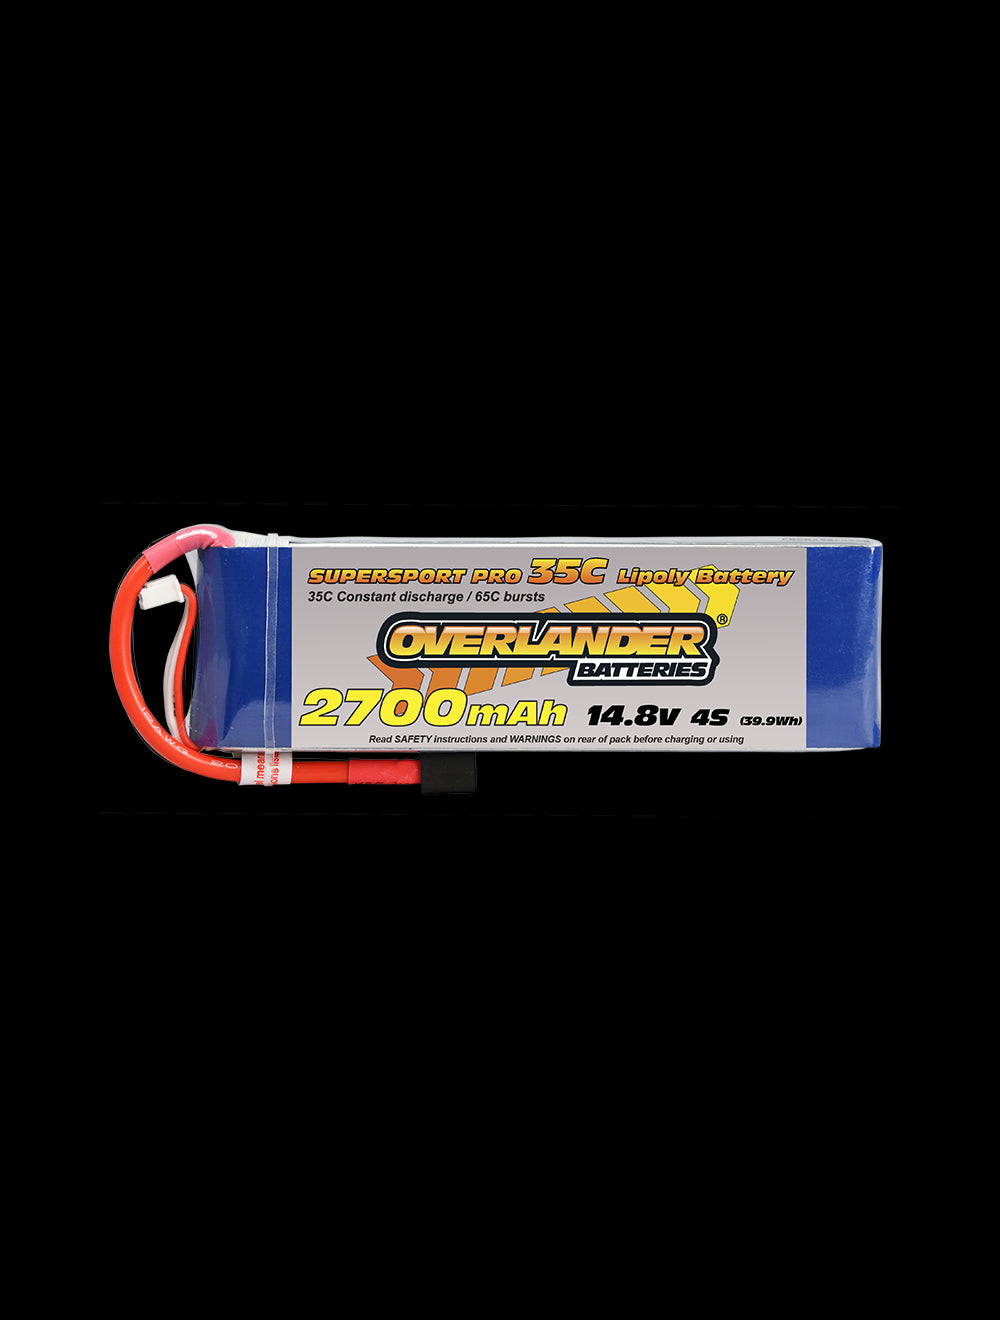 Overlander 2700mAh 14.8V 4S 35C Supersport Pro LiPo Battery - XT60 Connector 2481